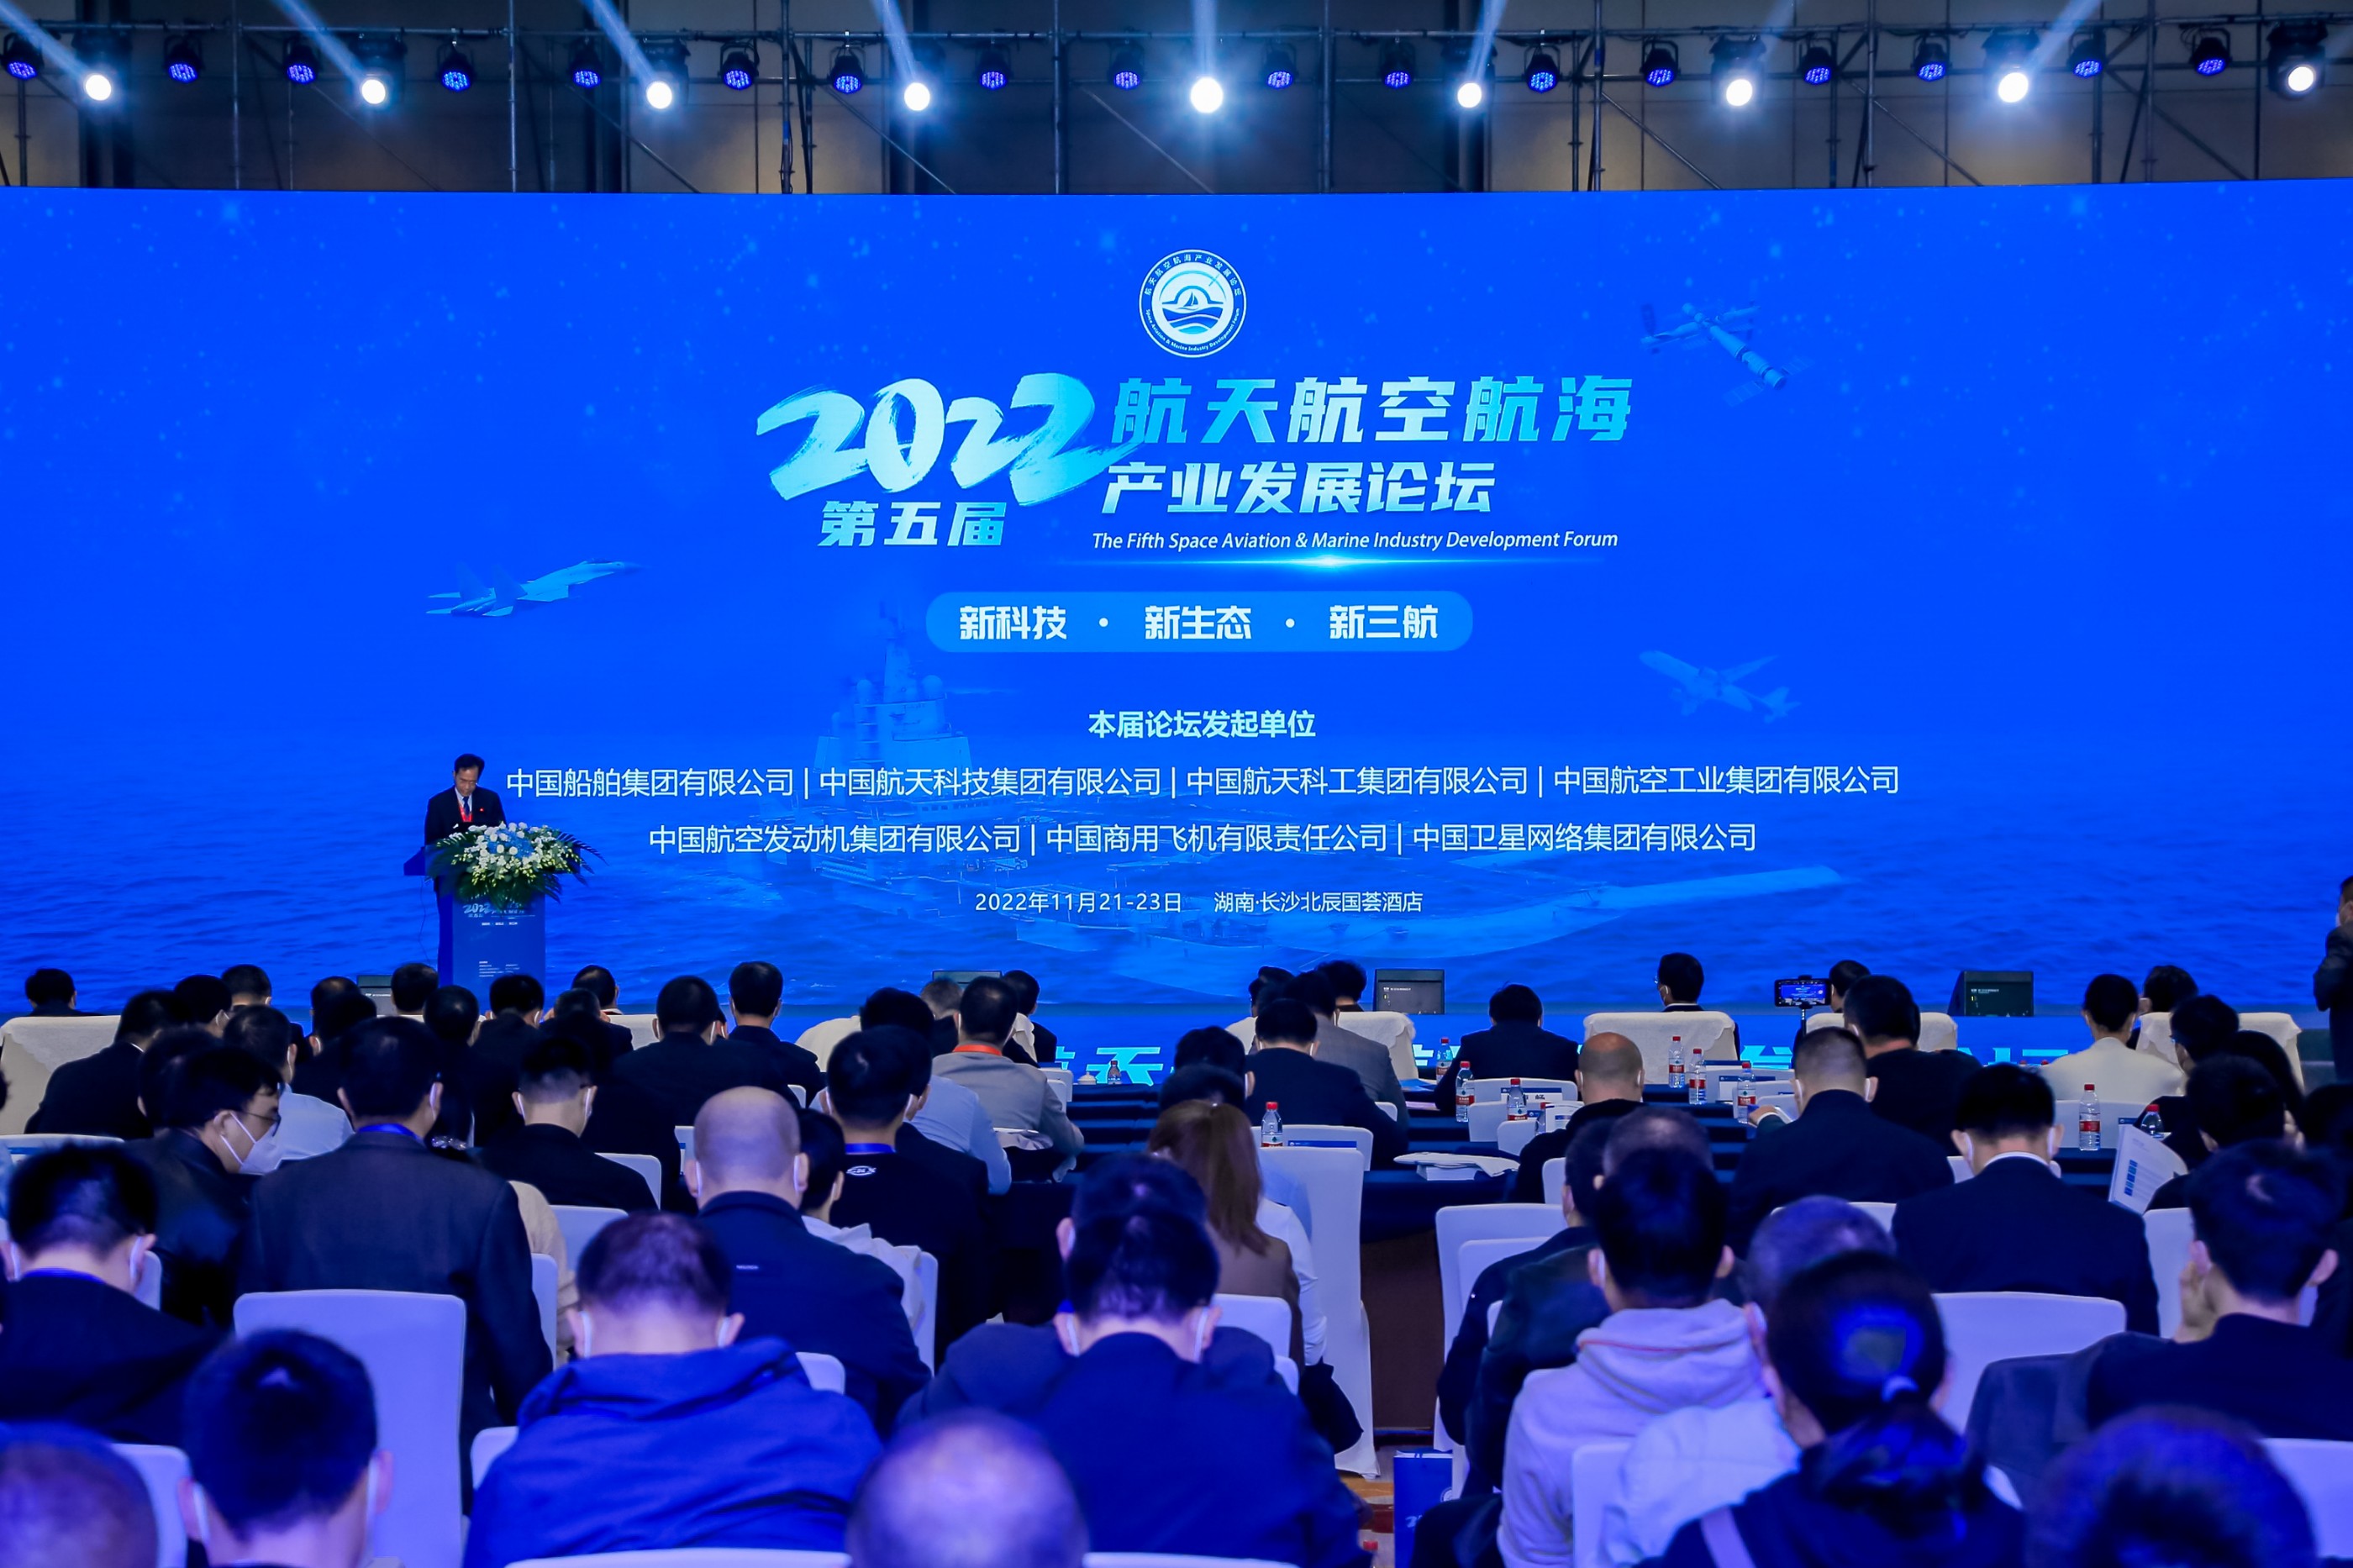 新科技、新生態、新三航 | W88中文亮相2022第五屆航天航空航海產業發展論壇